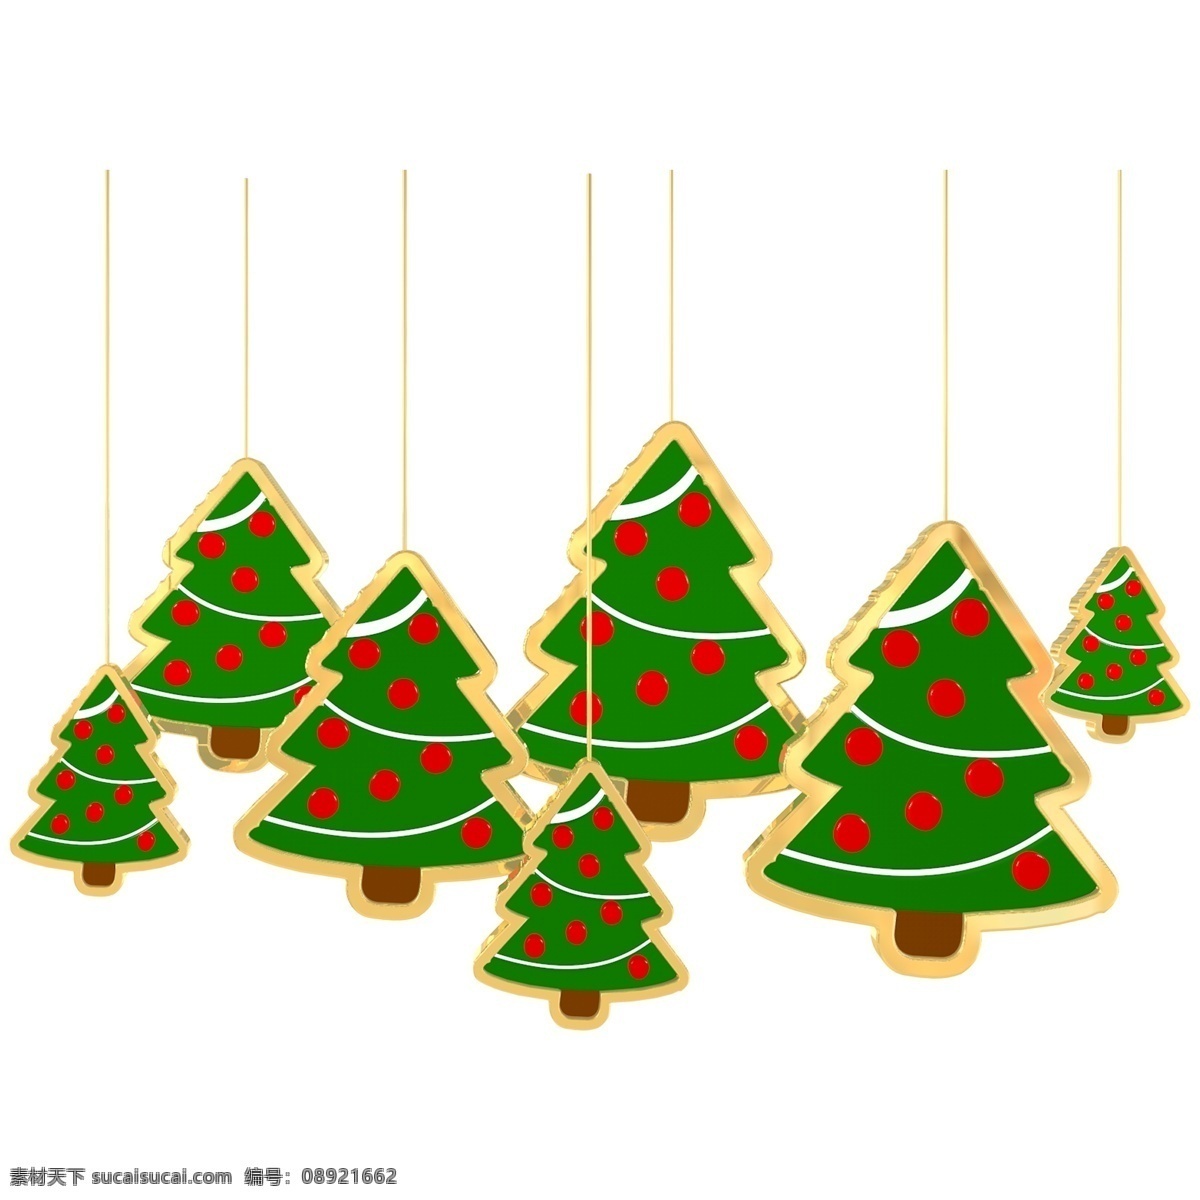 圣诞节 圣诞树 c4d 立体 金边 挂饰 装饰 圣诞 圣诞夜 树 3d 金色 节日氛围